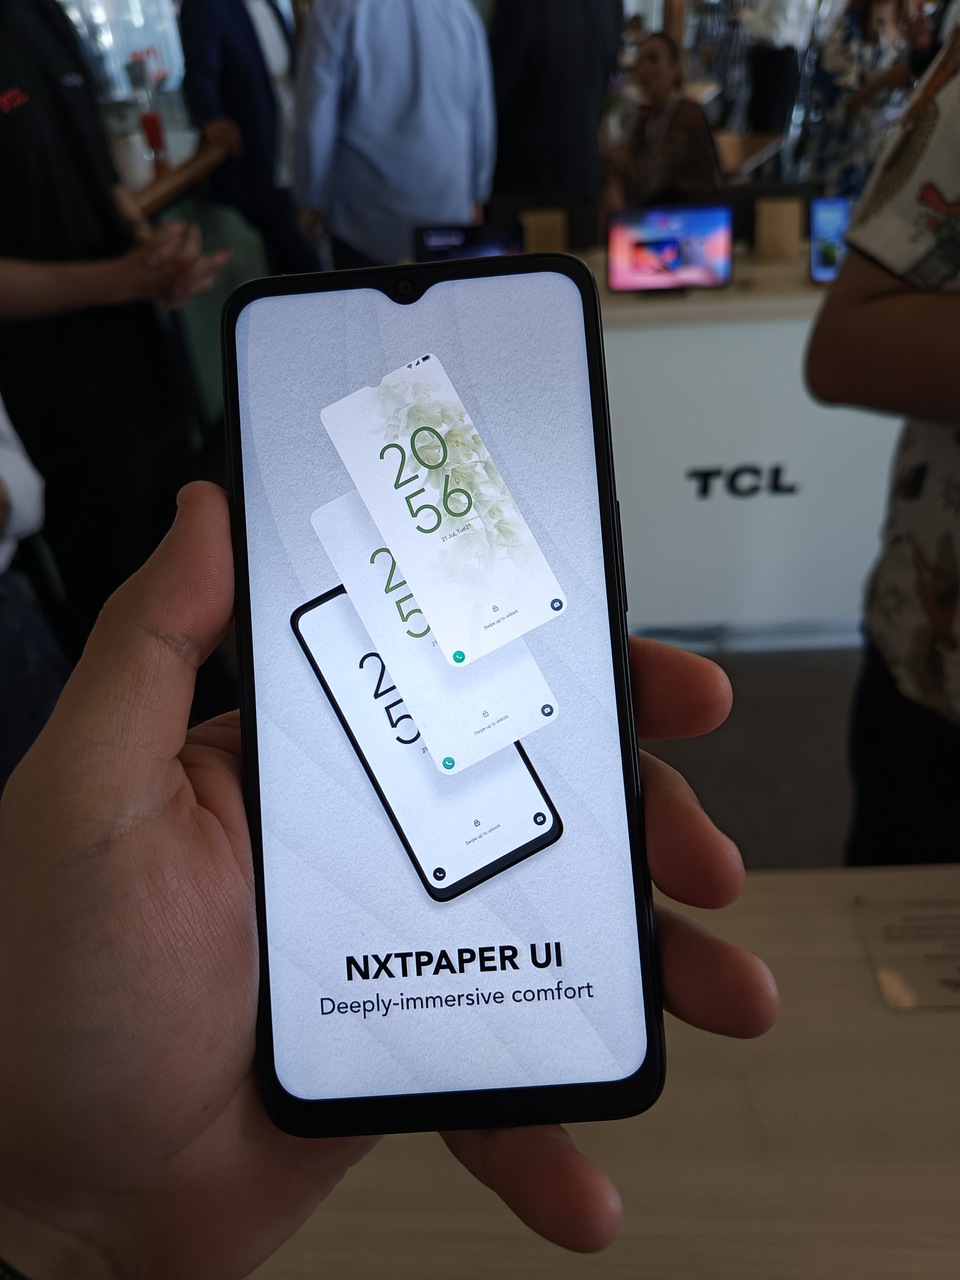 Imagem mostra nova linha TCL 40 NXTPAPER de smartphones e tablets da empresa chinesa